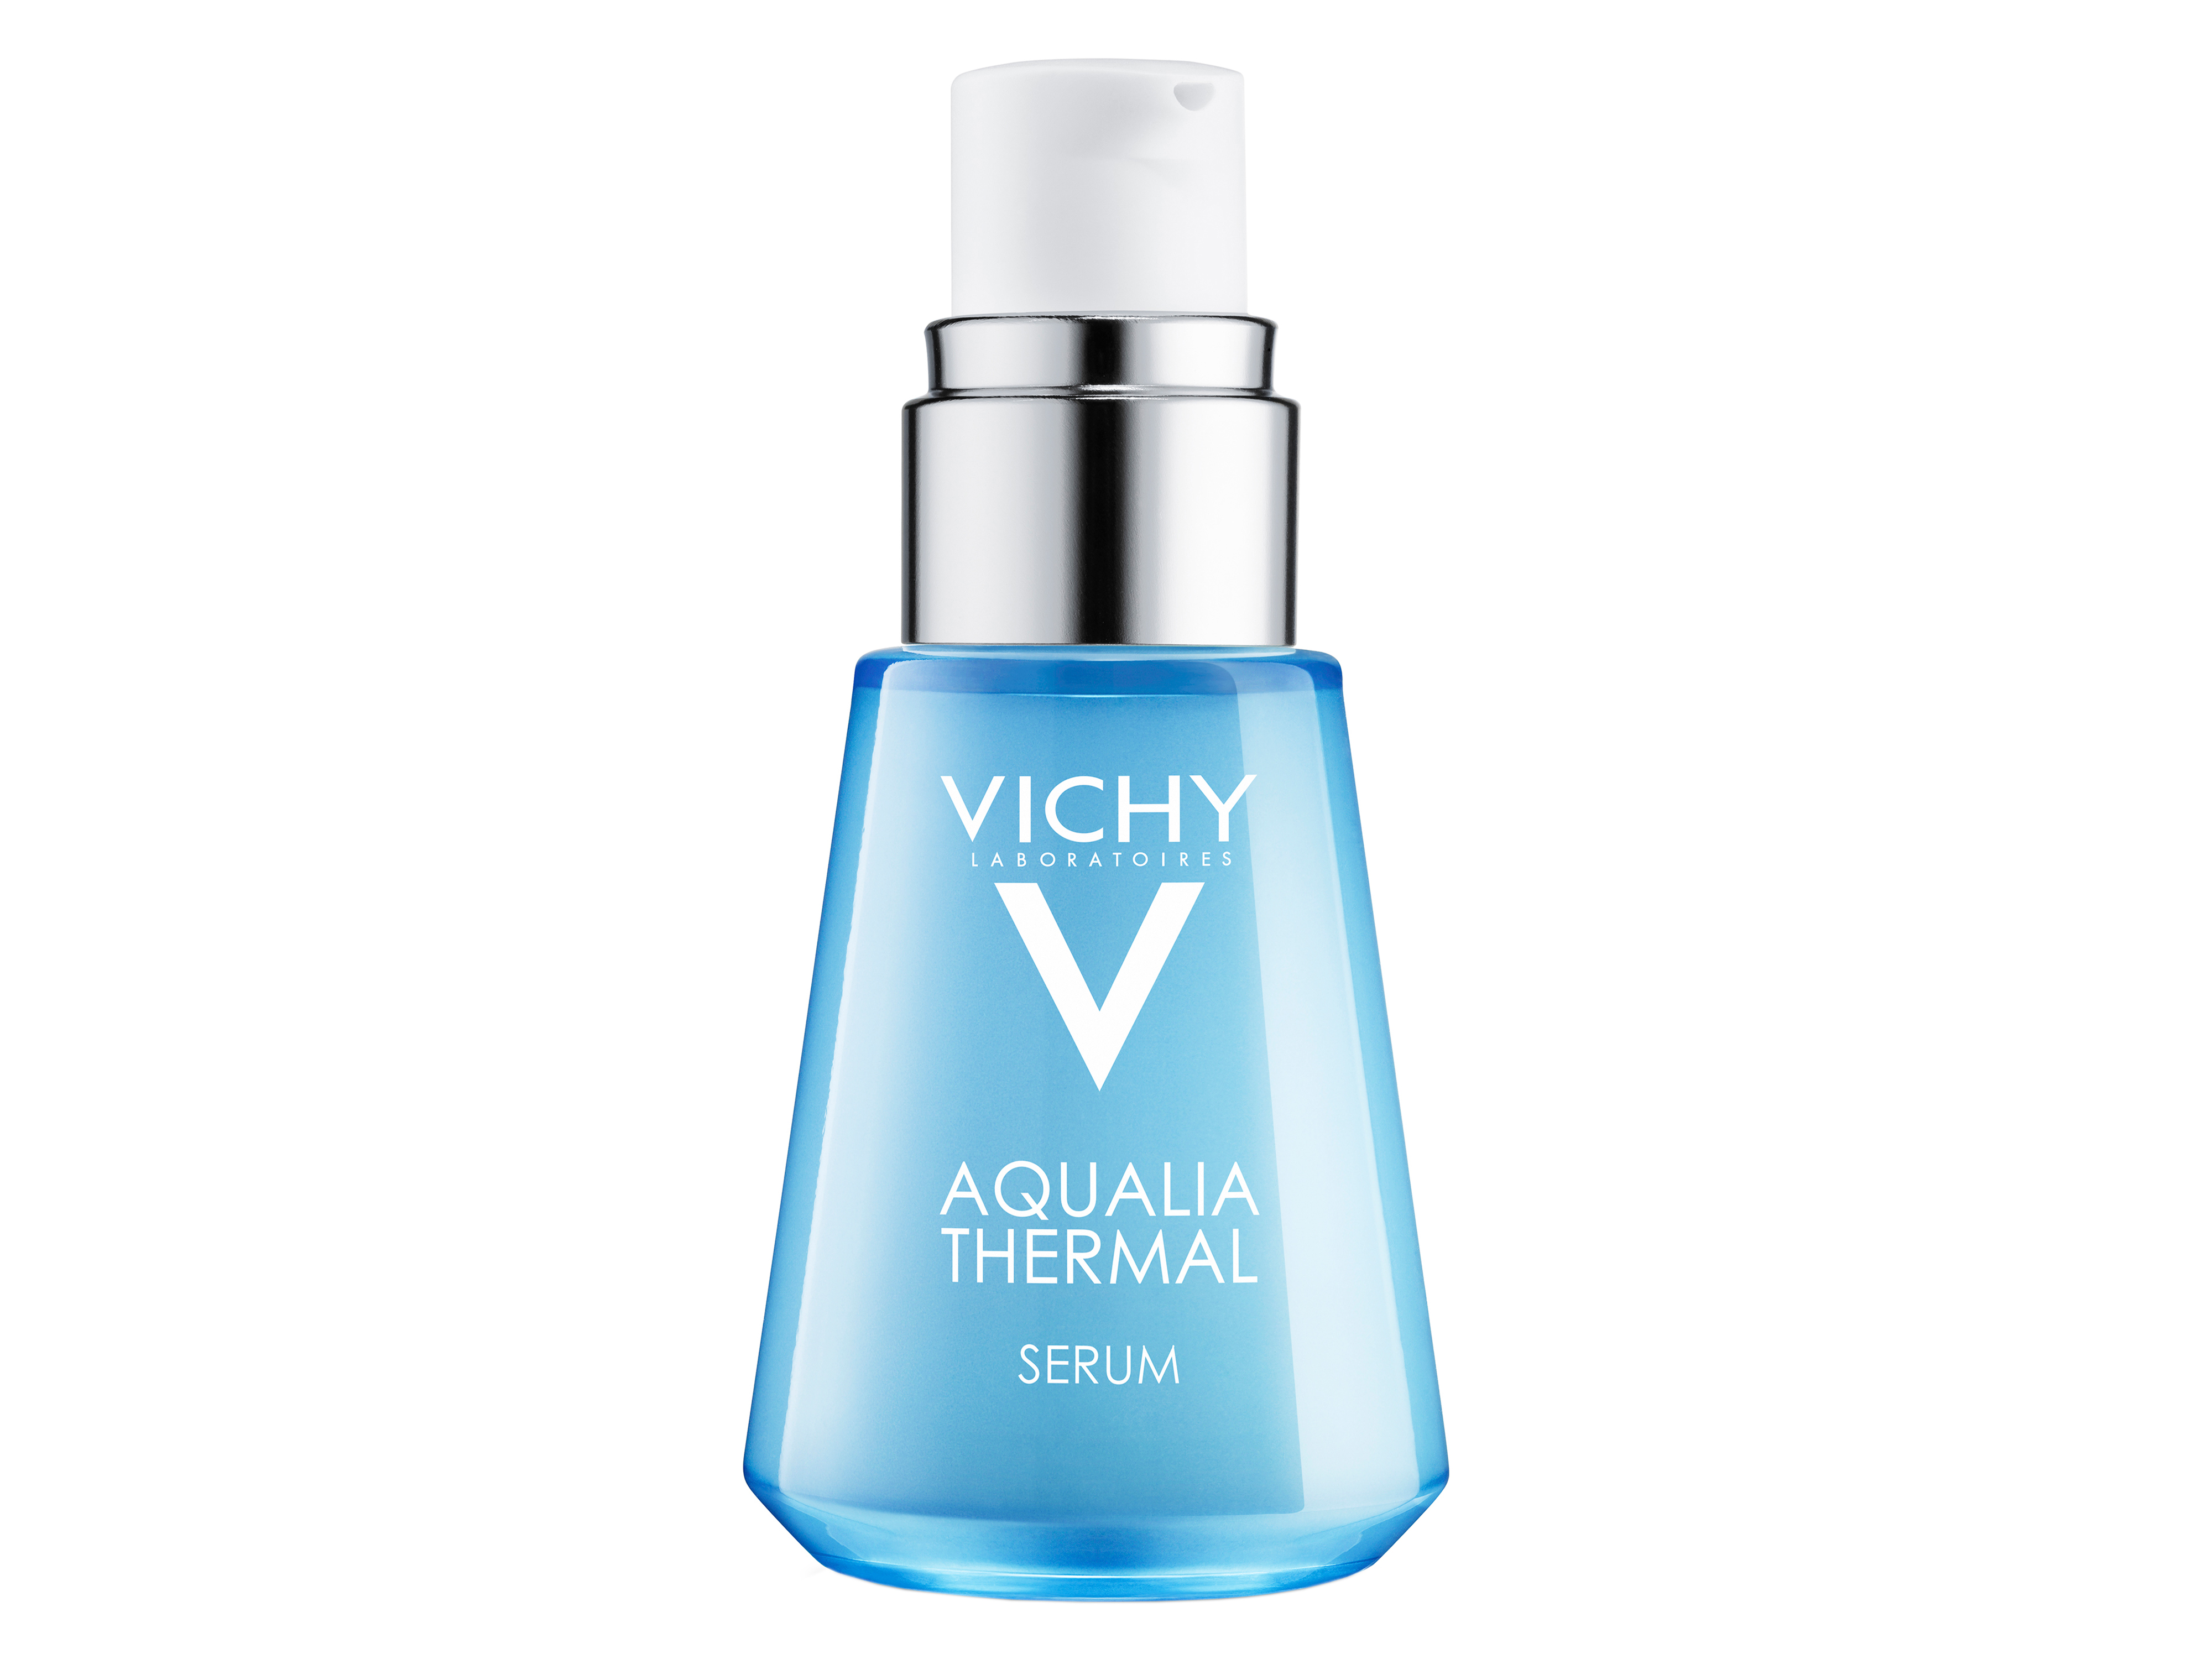 Vichy Aqualia Thermal Serum, 30 ml